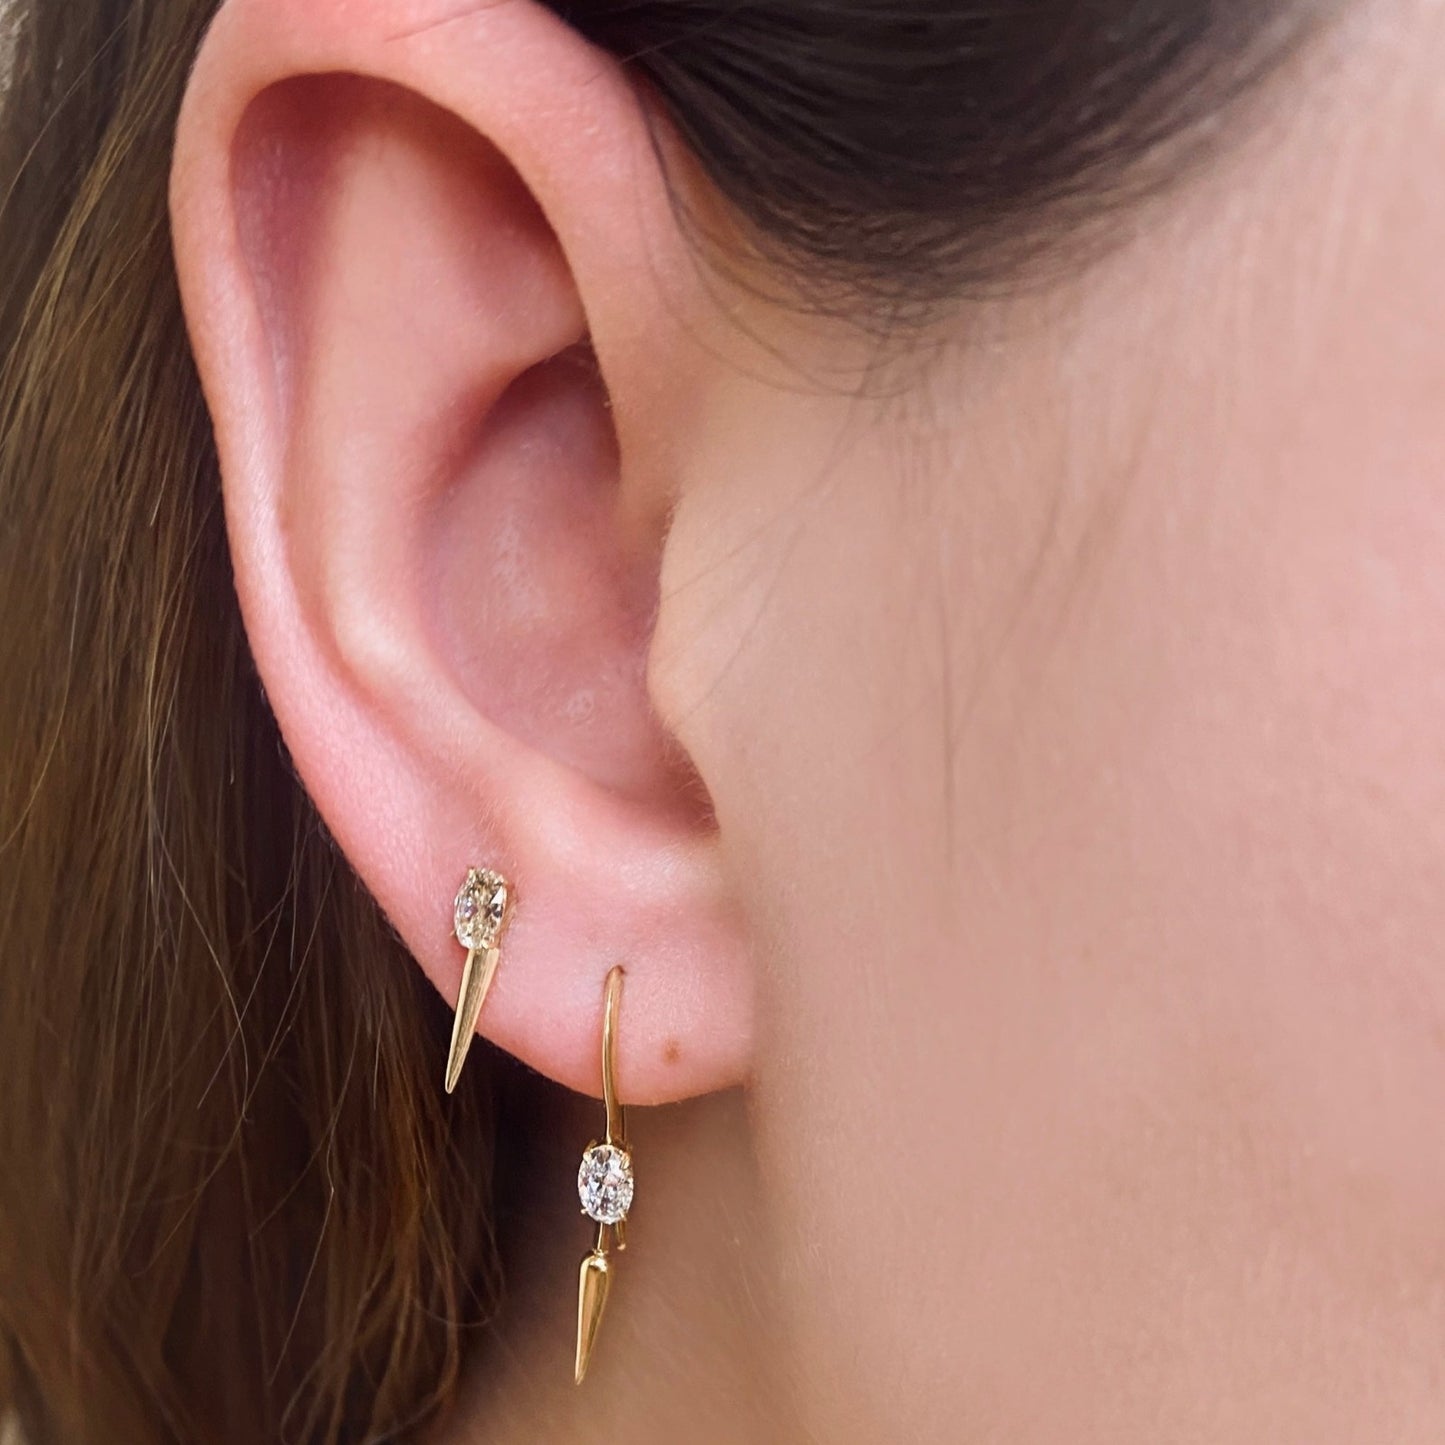 14k gold Single Diamond Drop Earrings styled on a ear